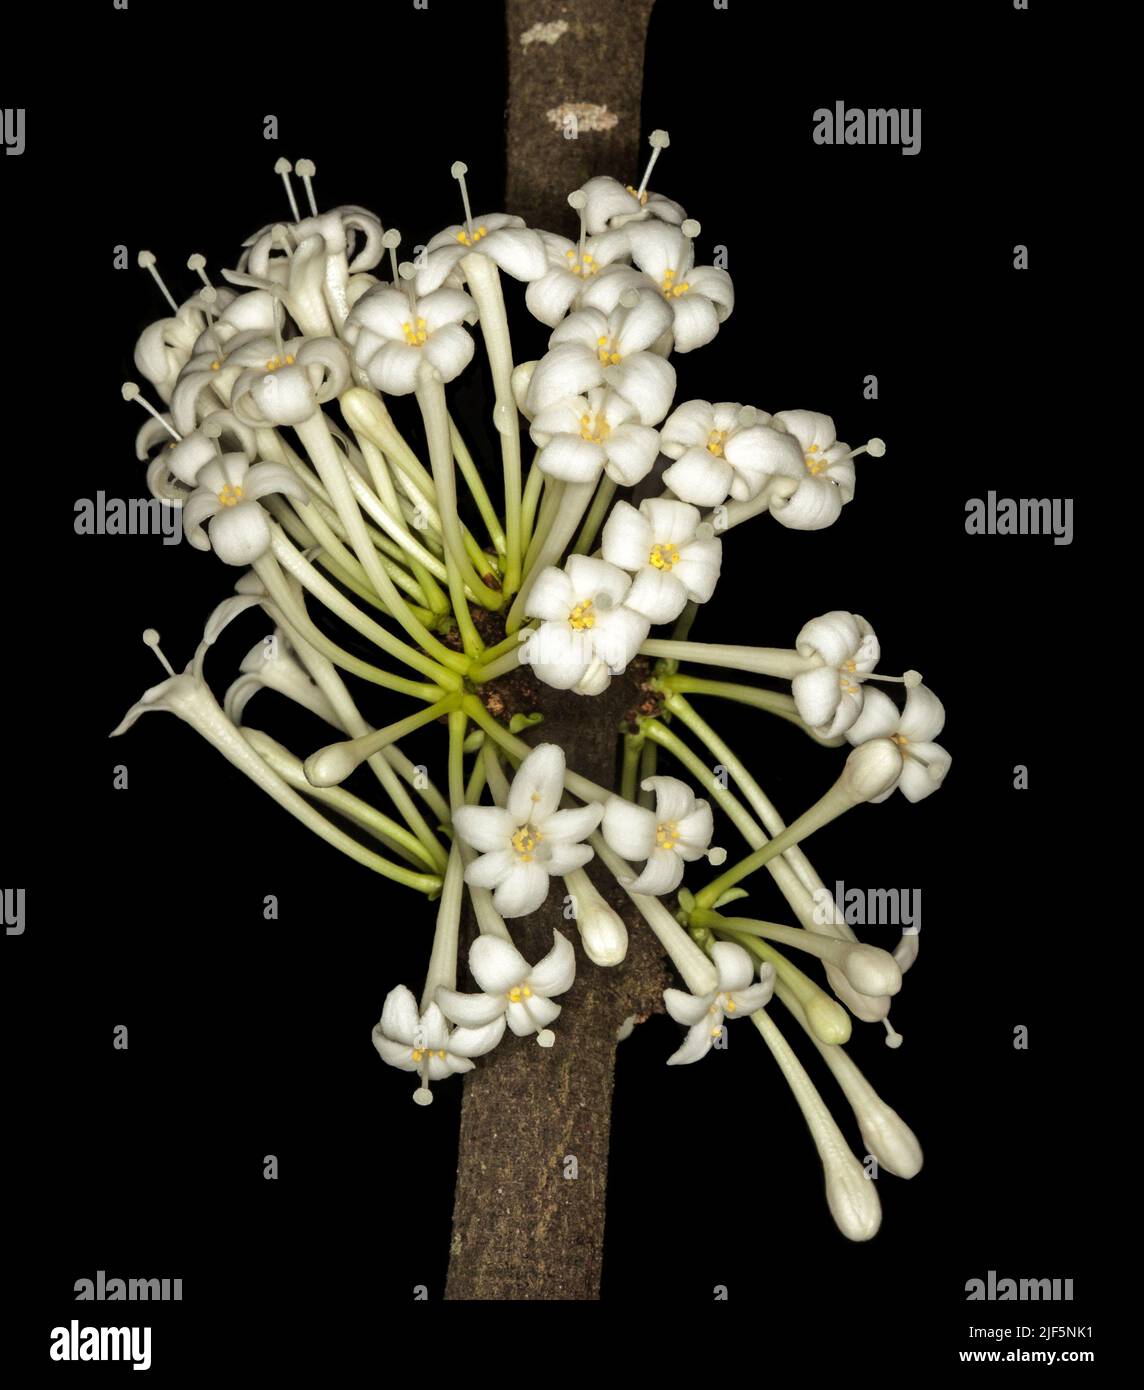 Eine Gruppe von weißen parfümierten Blüten von Phaleria clerodendron, duftende Daphne, die aus dem Stamm dieses australischen einheimischen Regenwaldbaums sprießt Stockfoto